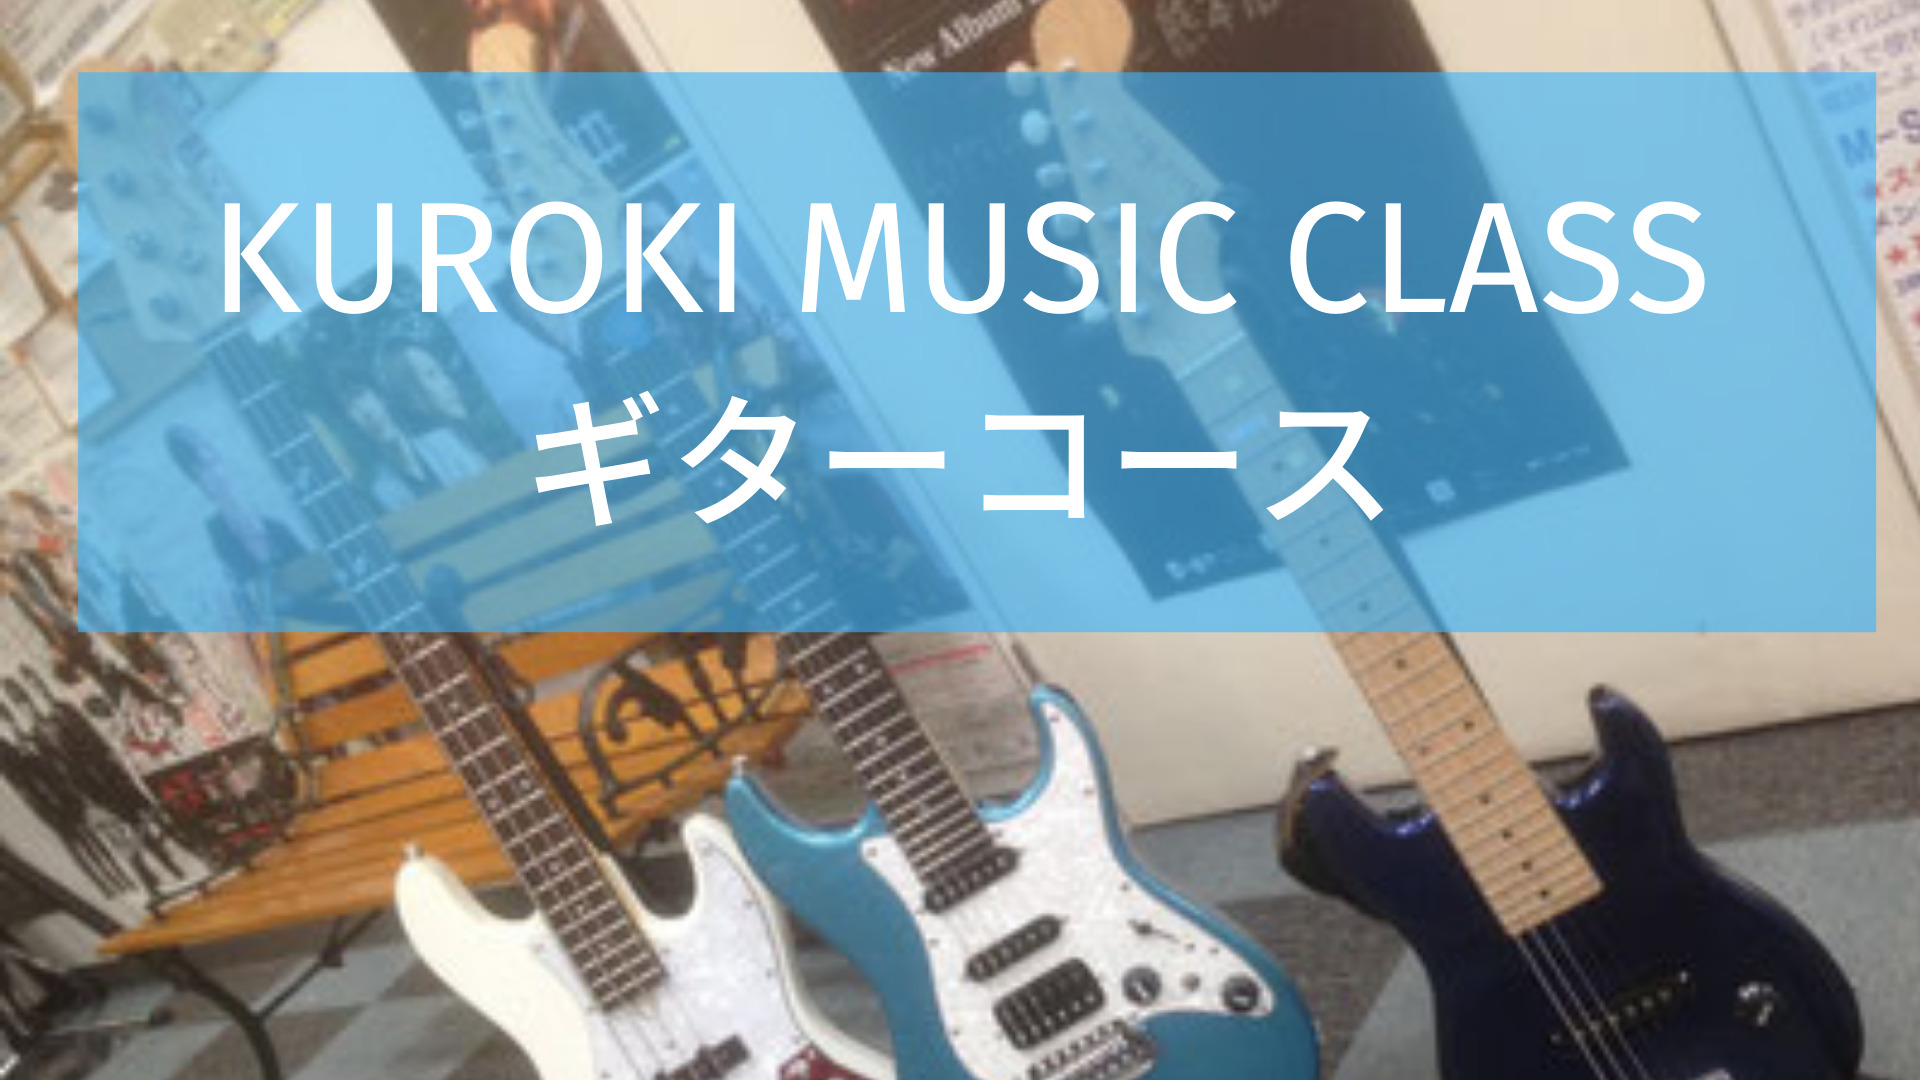 KUROKI MUSIC CLASS熊本ギターコース